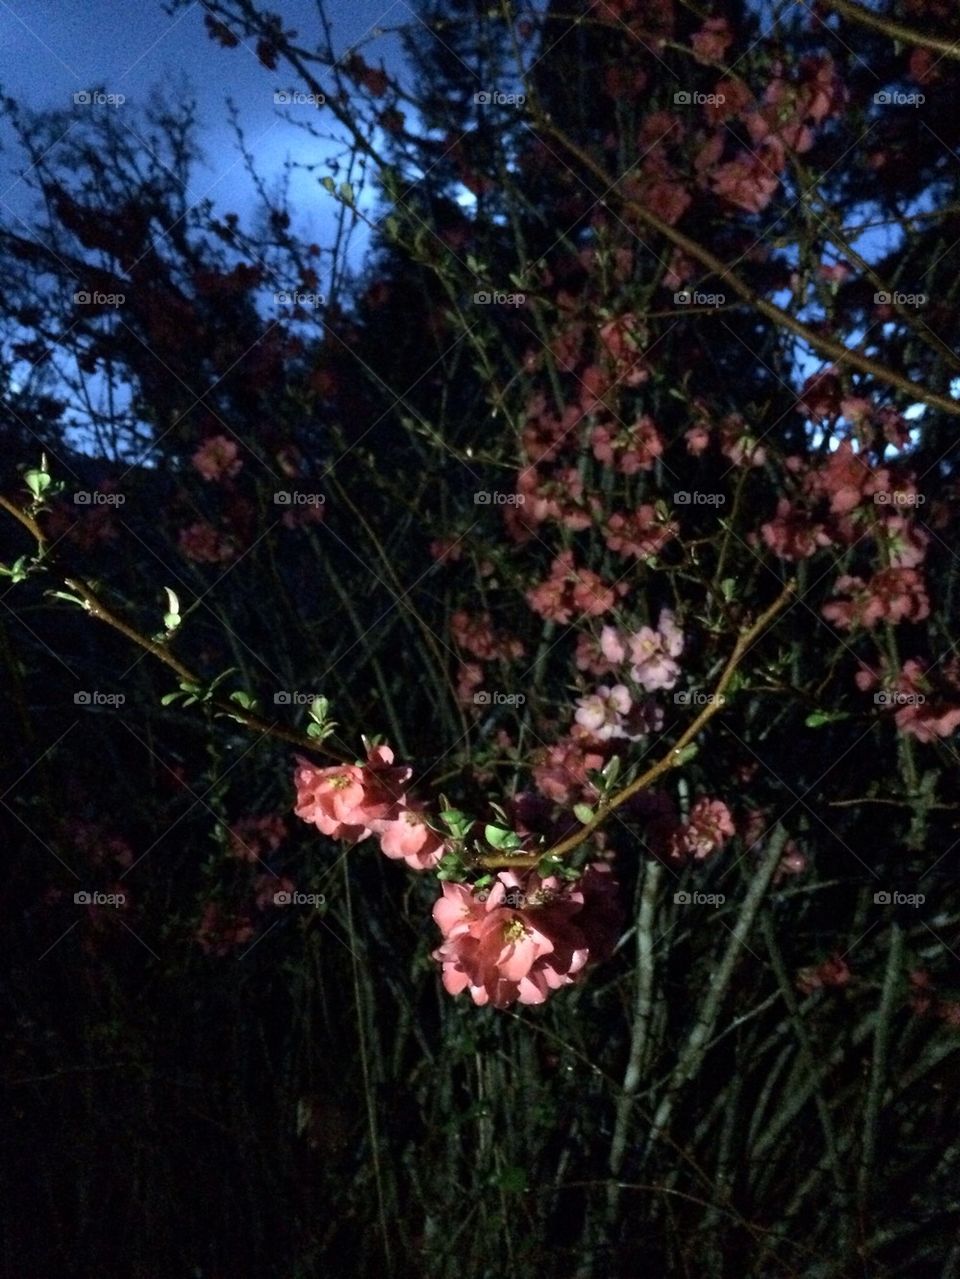 Night flowers